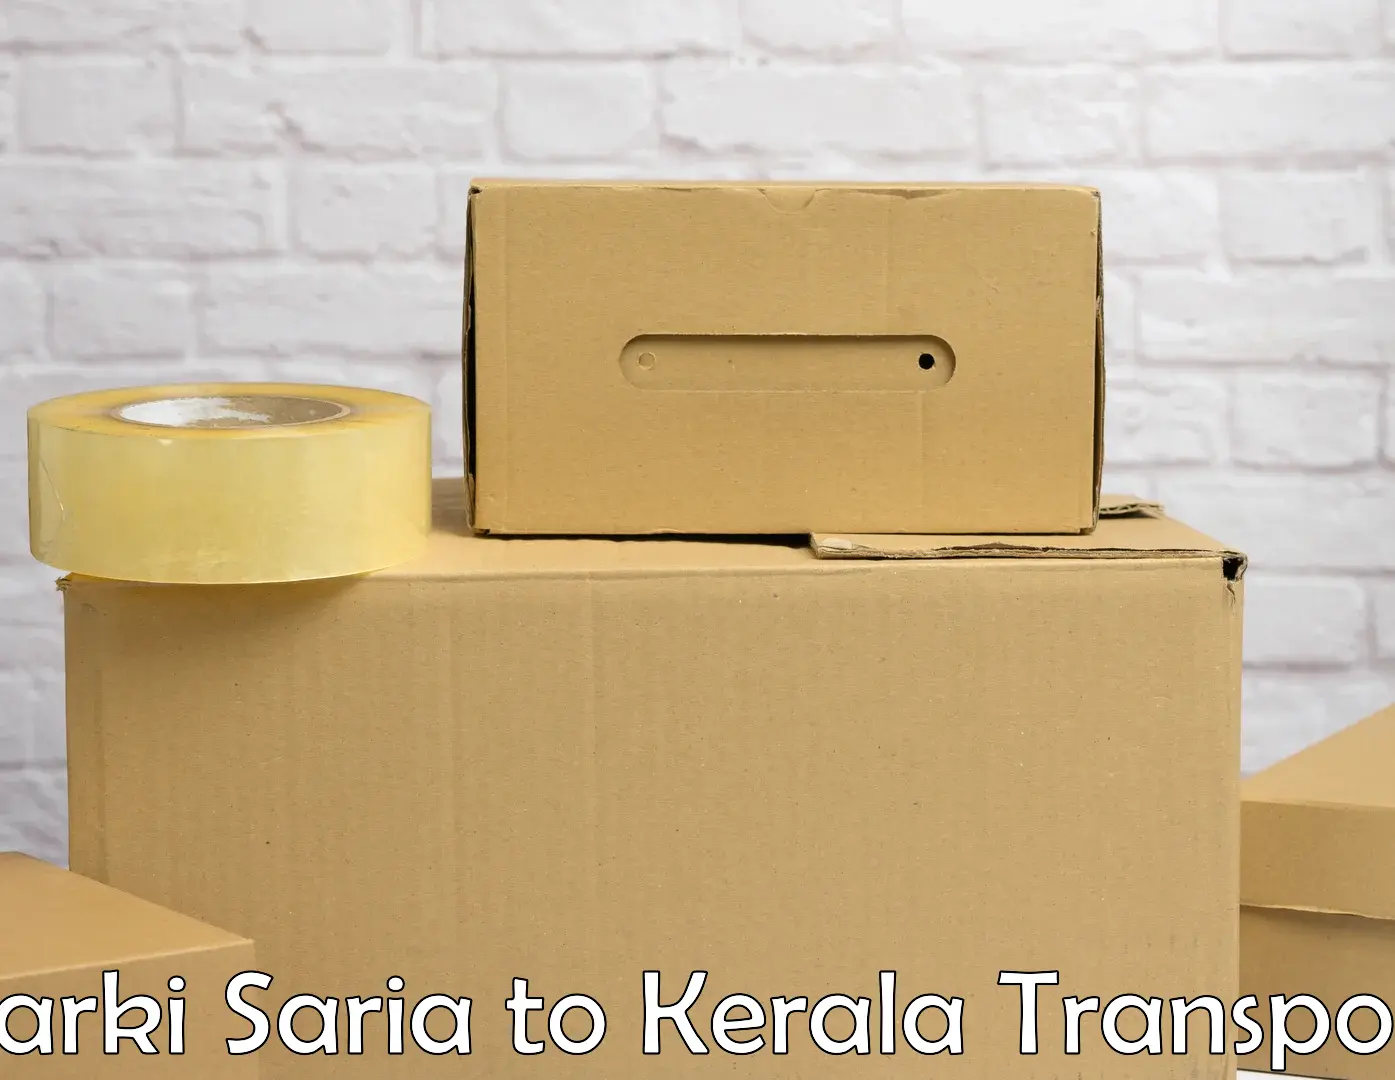 Goods transport services Barki Saria to Kottayam